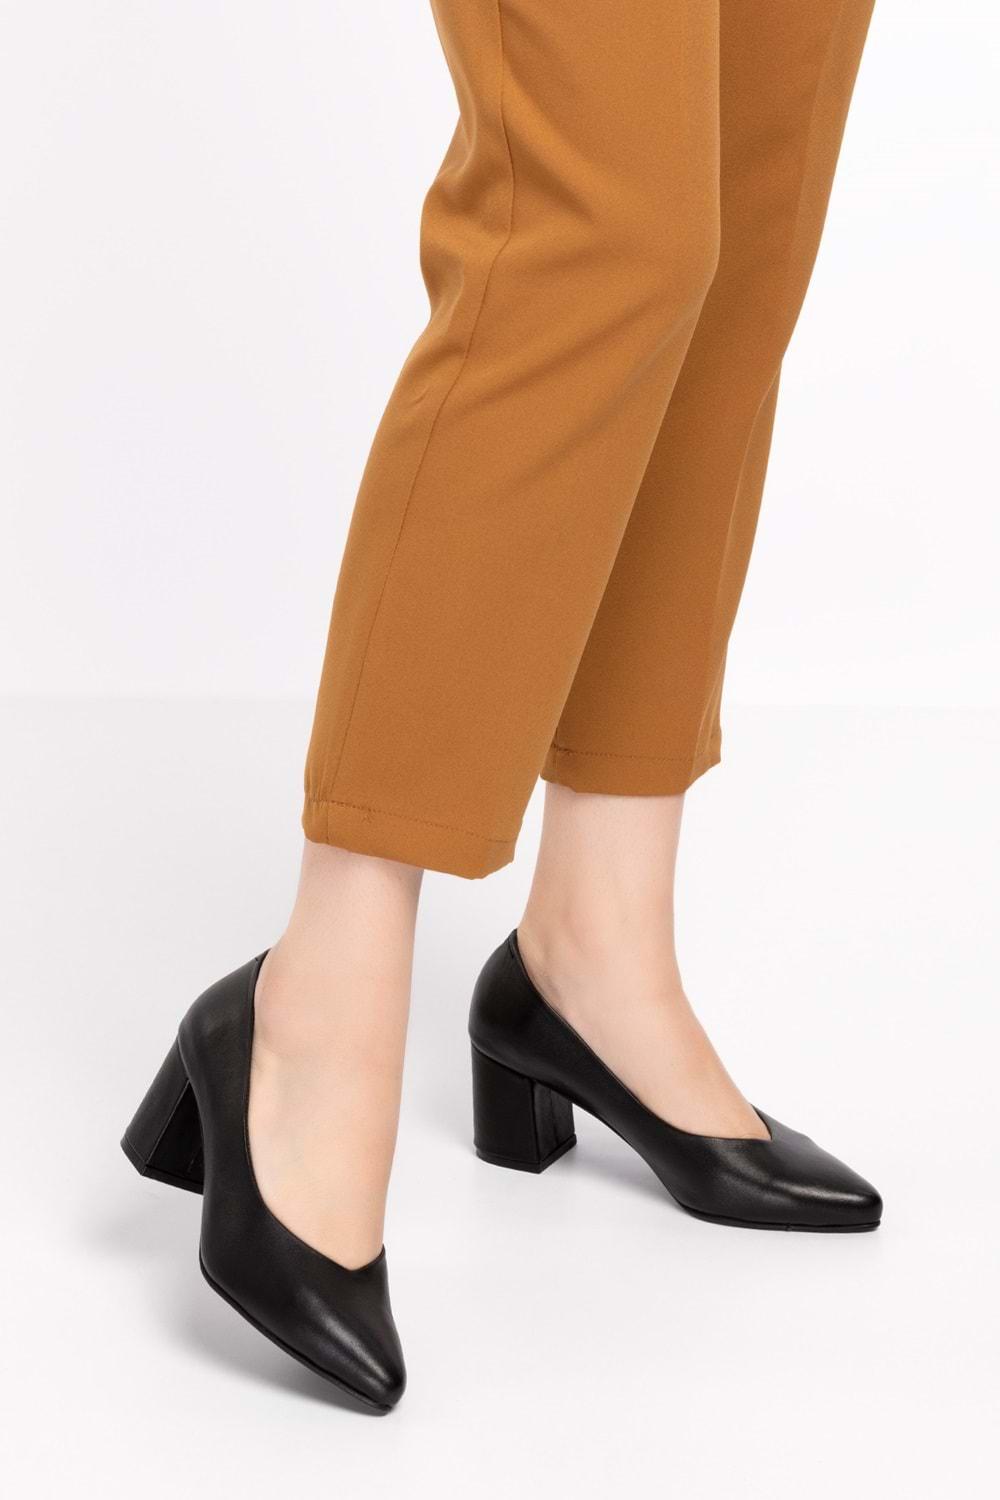 Gondol Kadın Hakiki Deri Klasik Topuklu Ayakkabı şhn.1930 - Siyah - 36